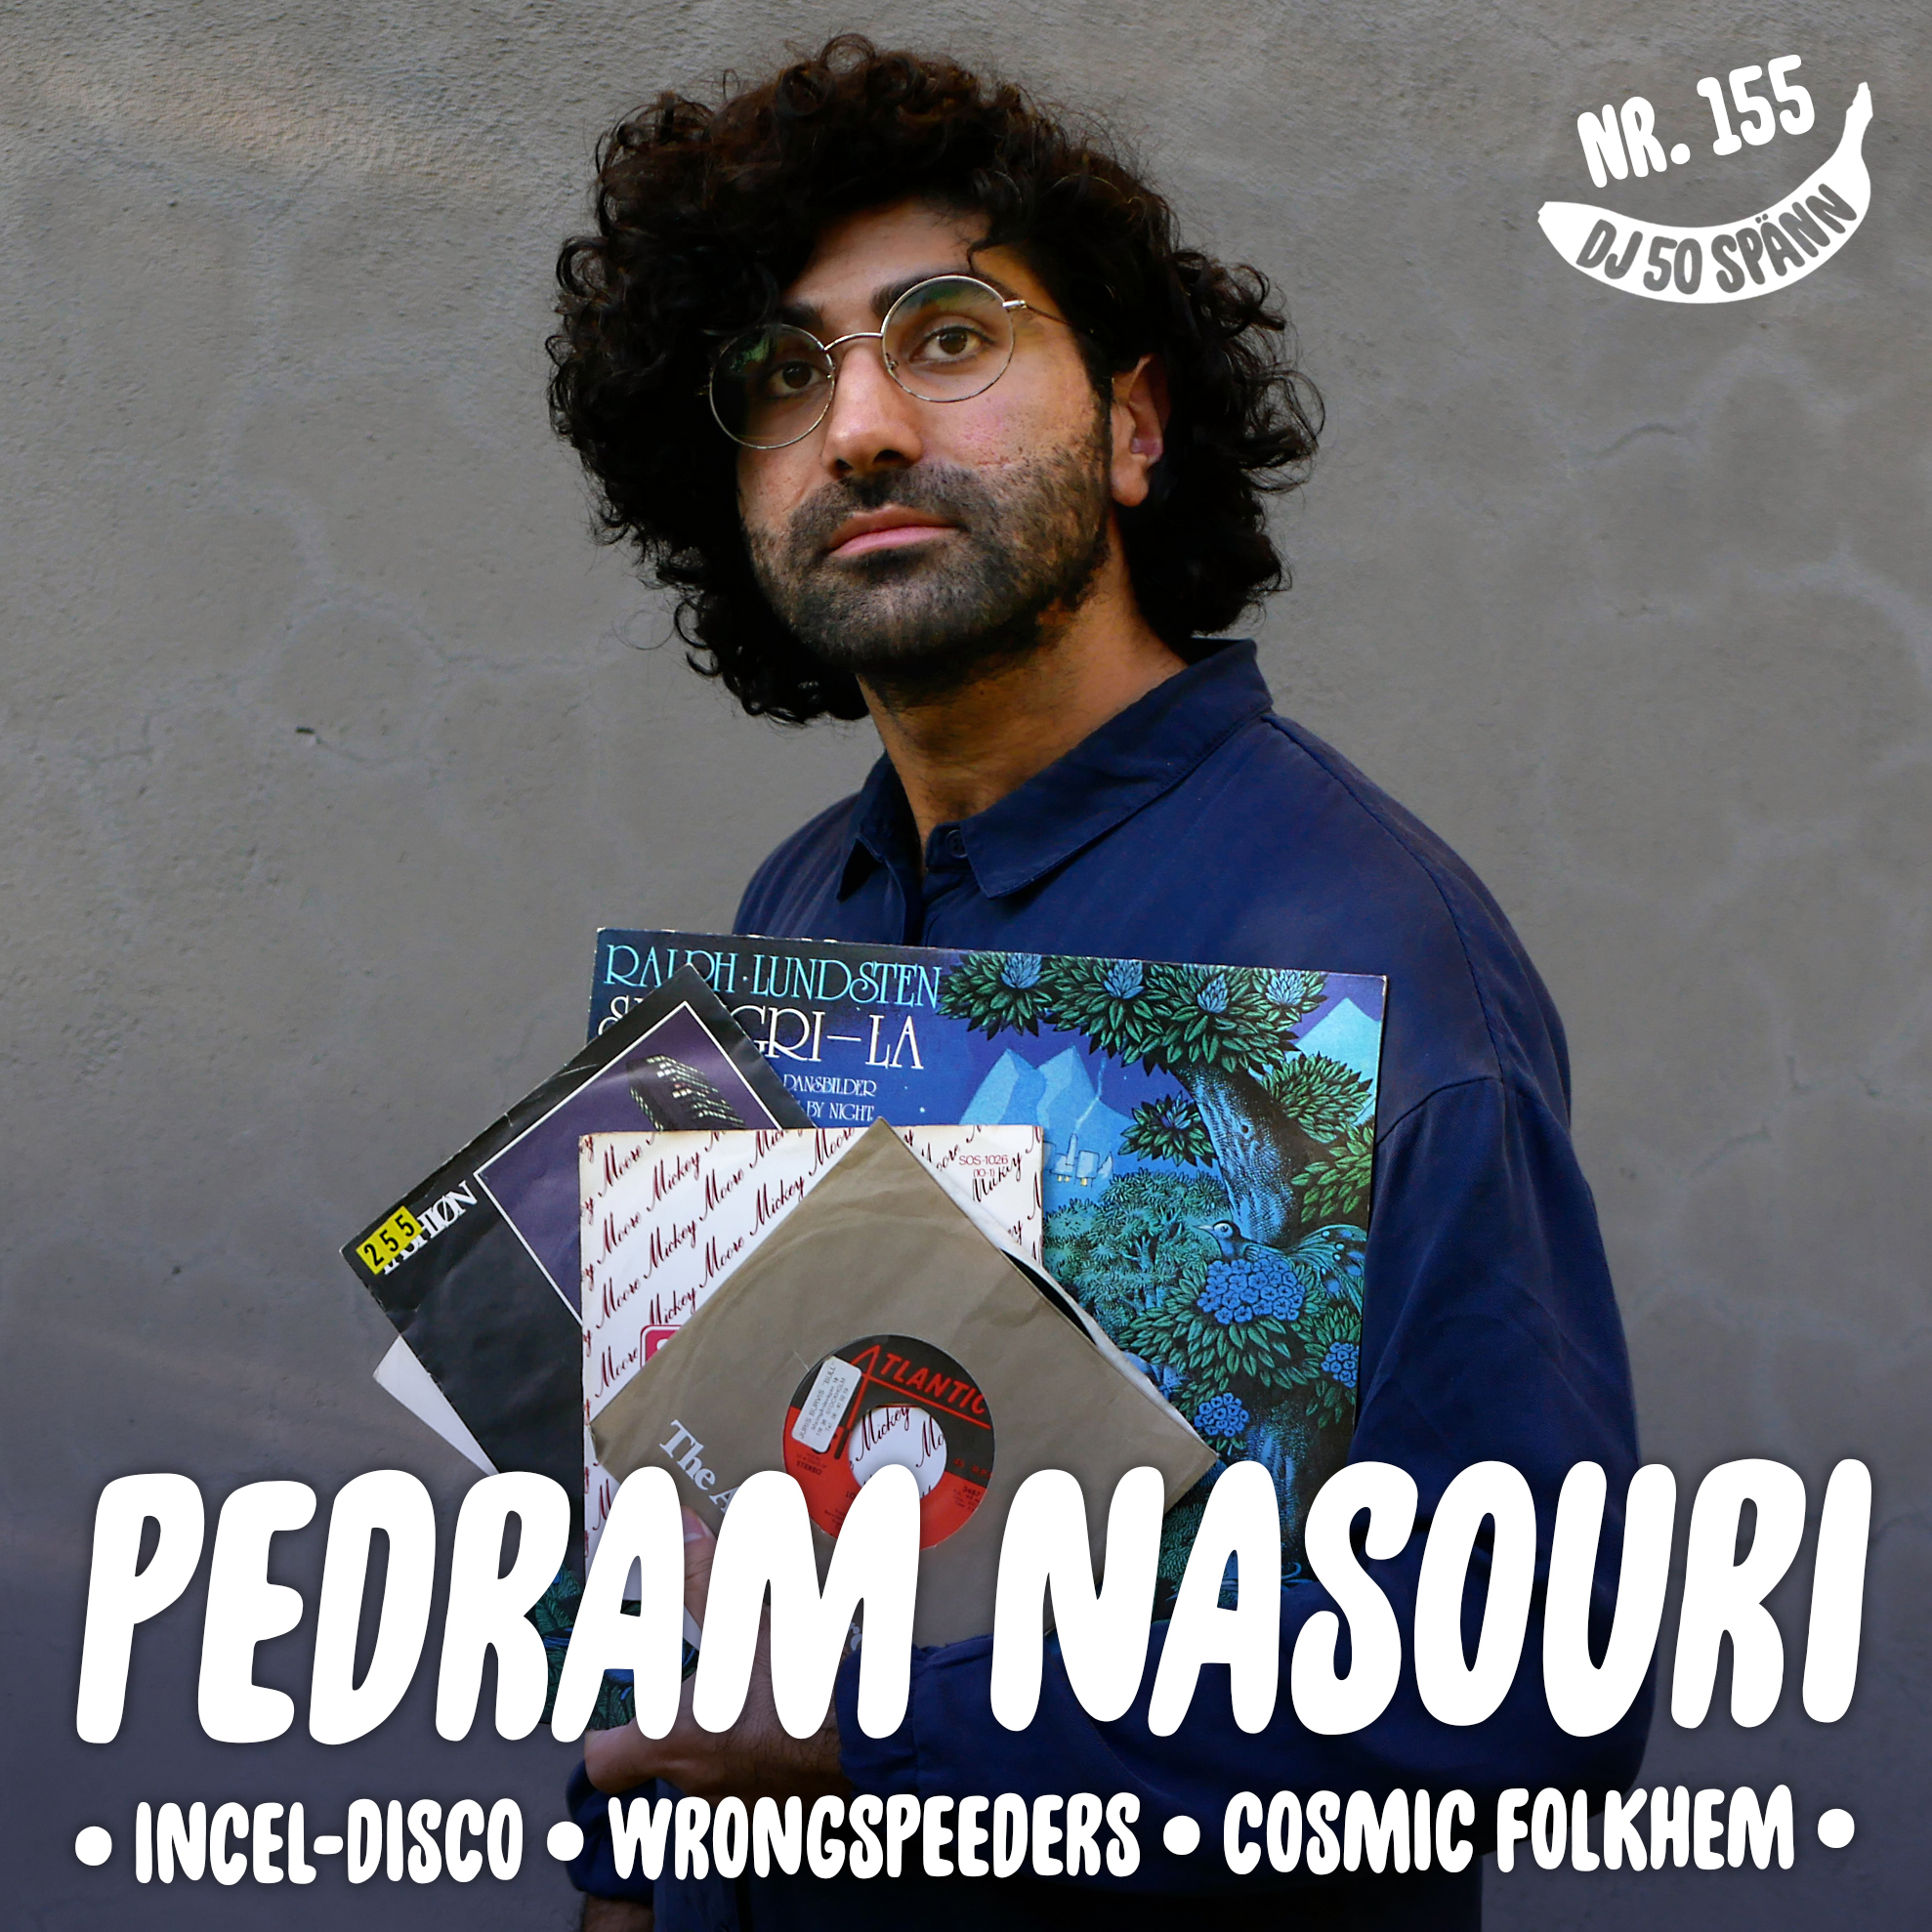 Incel-disco och wrongspeeders med Pedram Nasouri